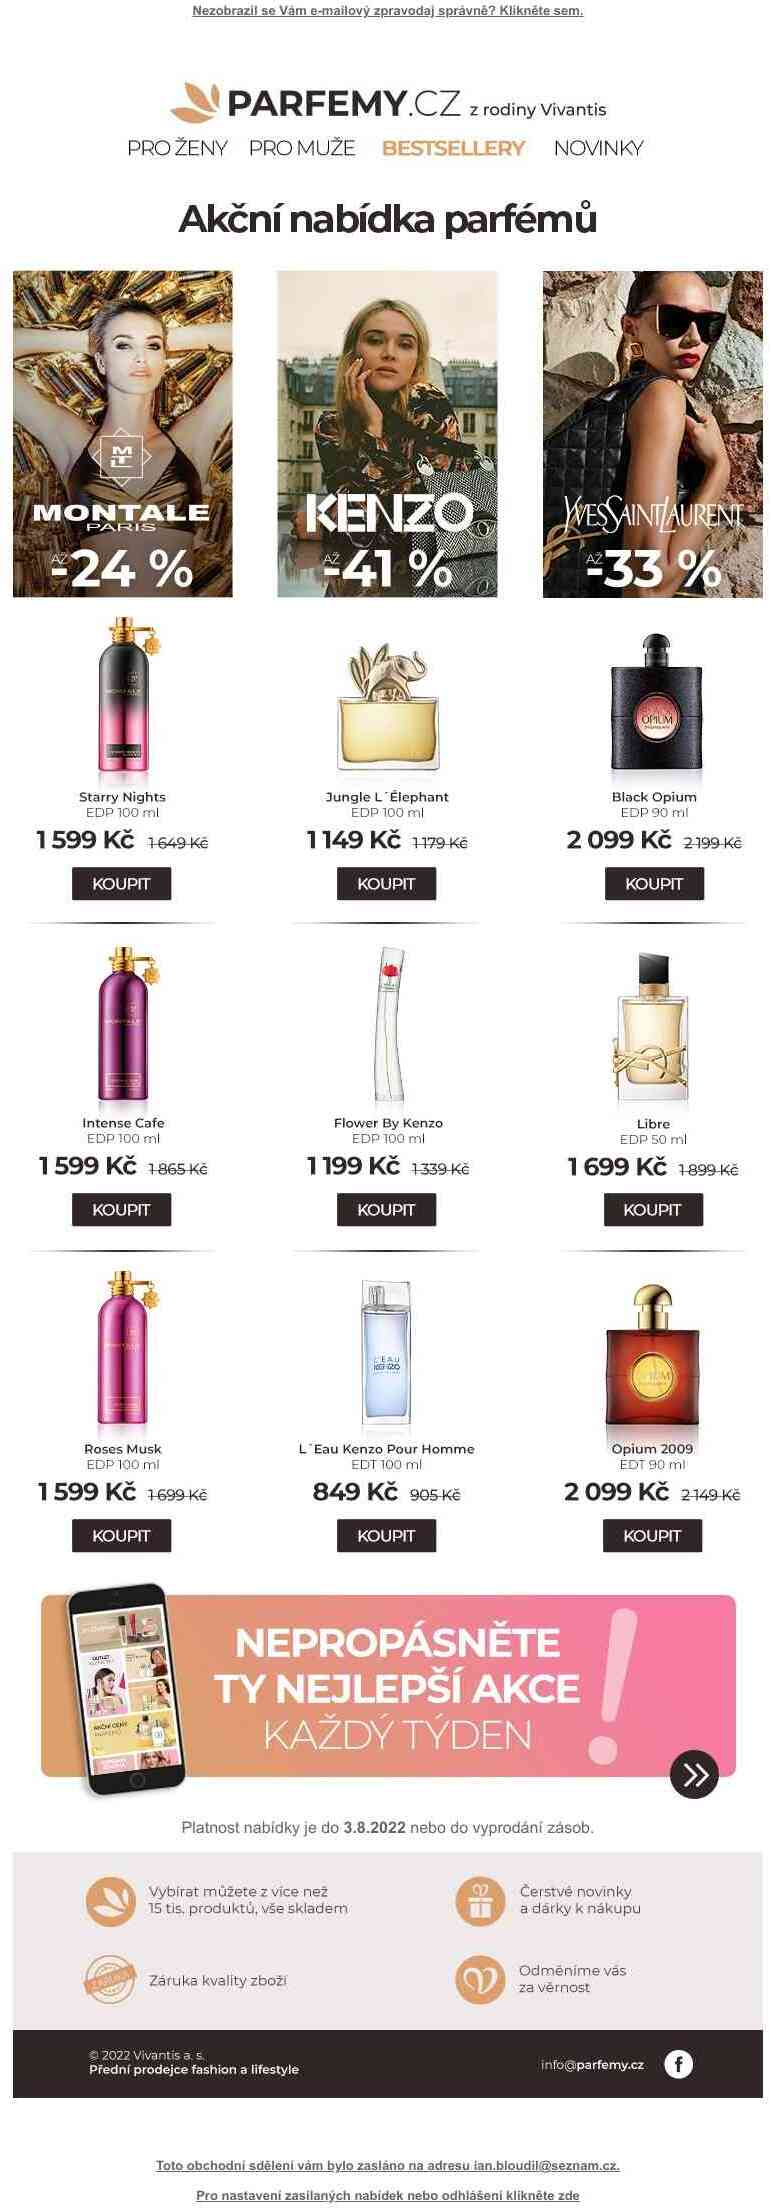 Právě teď akční ceny oblíbených parfémů Montale, Kenzo a Yves Saint Laurent »